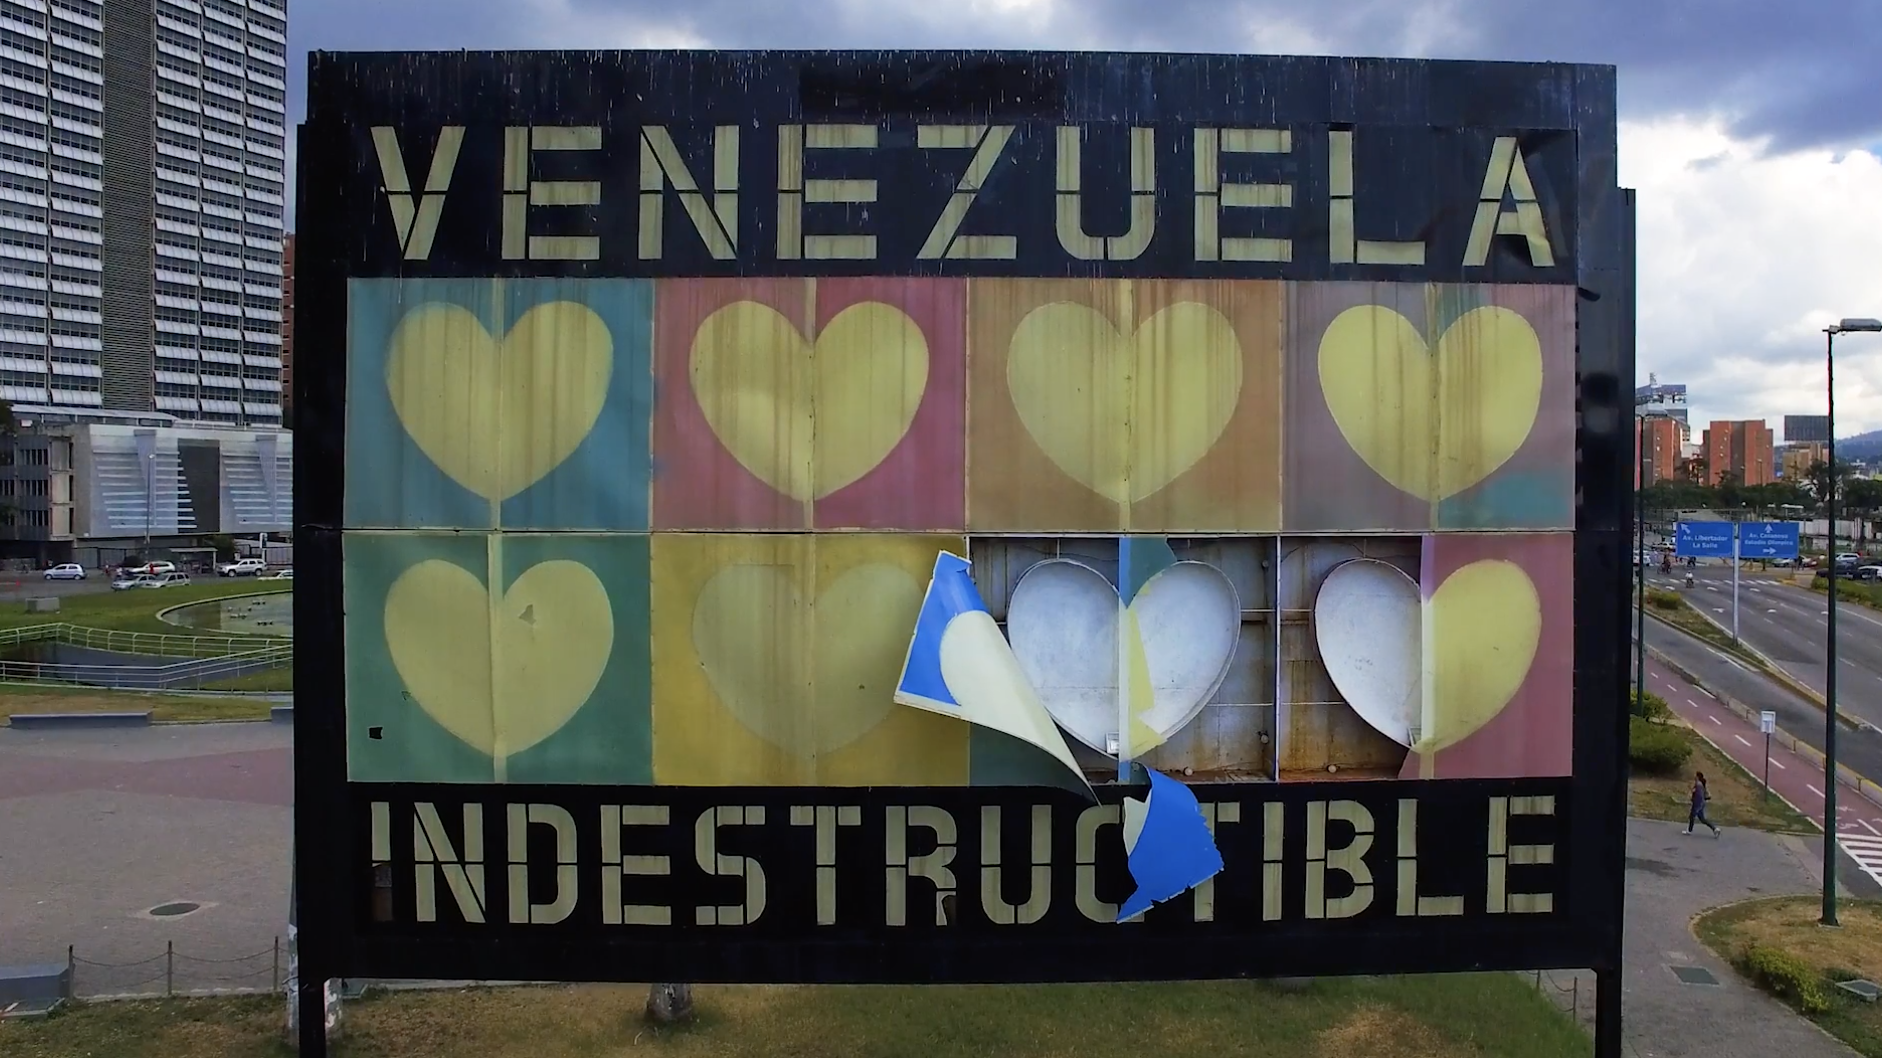 Τι συμβαίνει στη Βενεζουέλα; Ένα ντοκιμαντέρ δίνει απαντήσεις